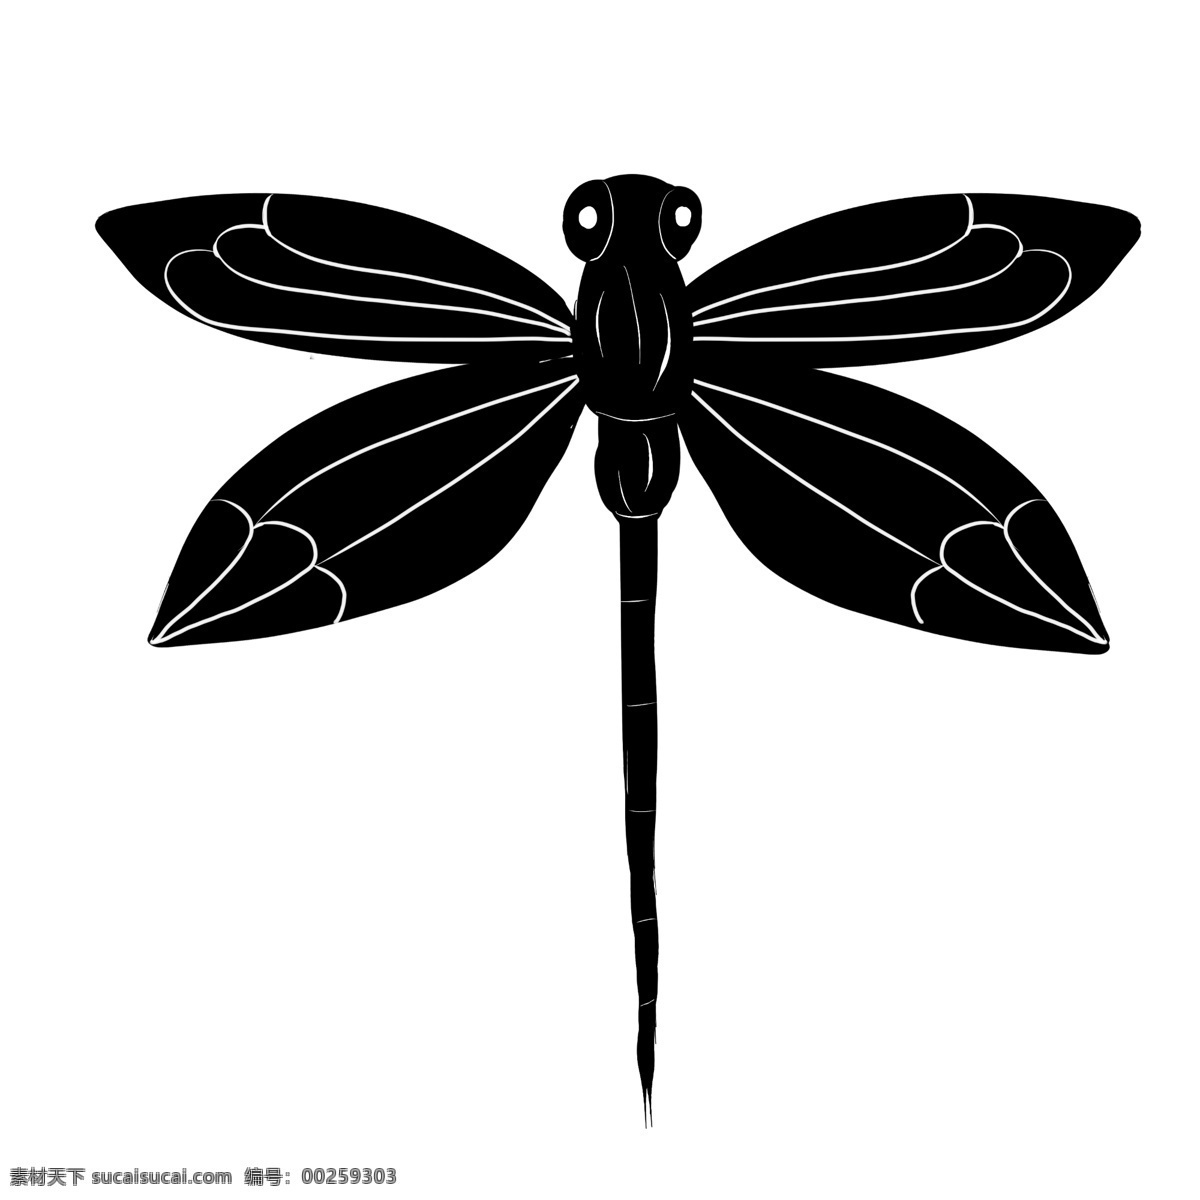 蜻蜓 纹身 装饰 插画 蜻蜓纹身 漂亮的纹身 黑色的纹身 纹身装饰 纹身插画 立体纹身 卡通纹身